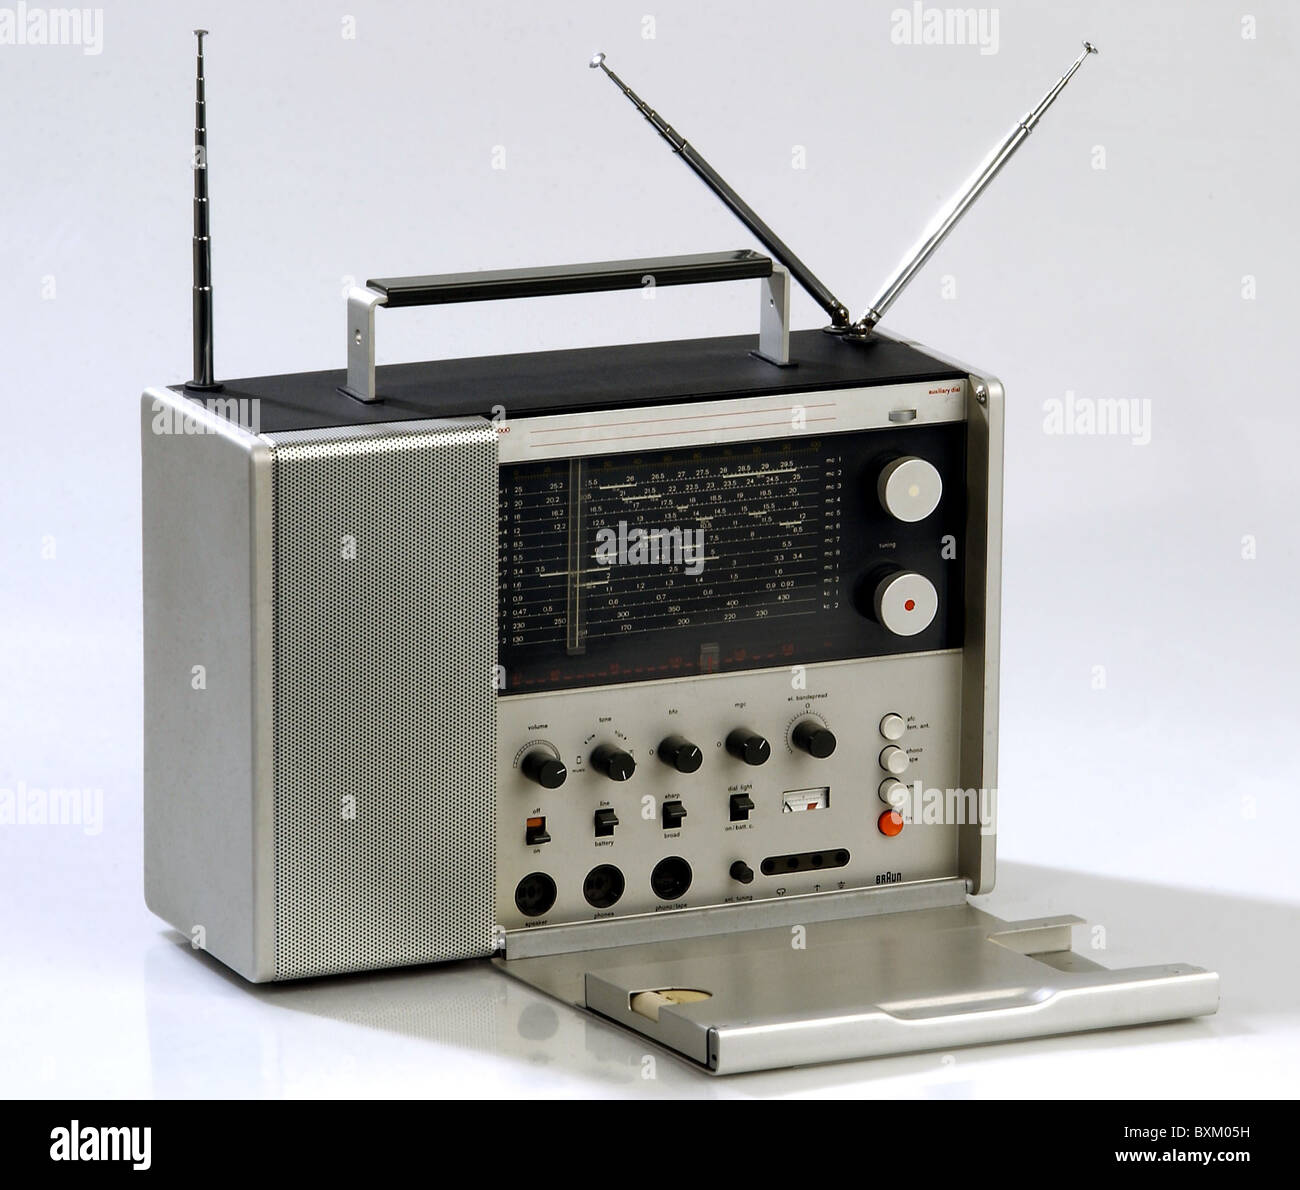 https://c8.alamy.com/compde/bxm05h/rundfunk-braun-radio-set-t-1000-deutschland-1963-kommunikation-technik-technik-historisch-historisch-ausschnitt-60er-60er-20-jahrhundert-design-von-dieter-rams-multiband-radio-sets-stabantenne-teleskopantenne-los-collection-studioaufnahme-heimelektronik-t1000-additional-rights-clearences-not-available-bxm05h.jpg